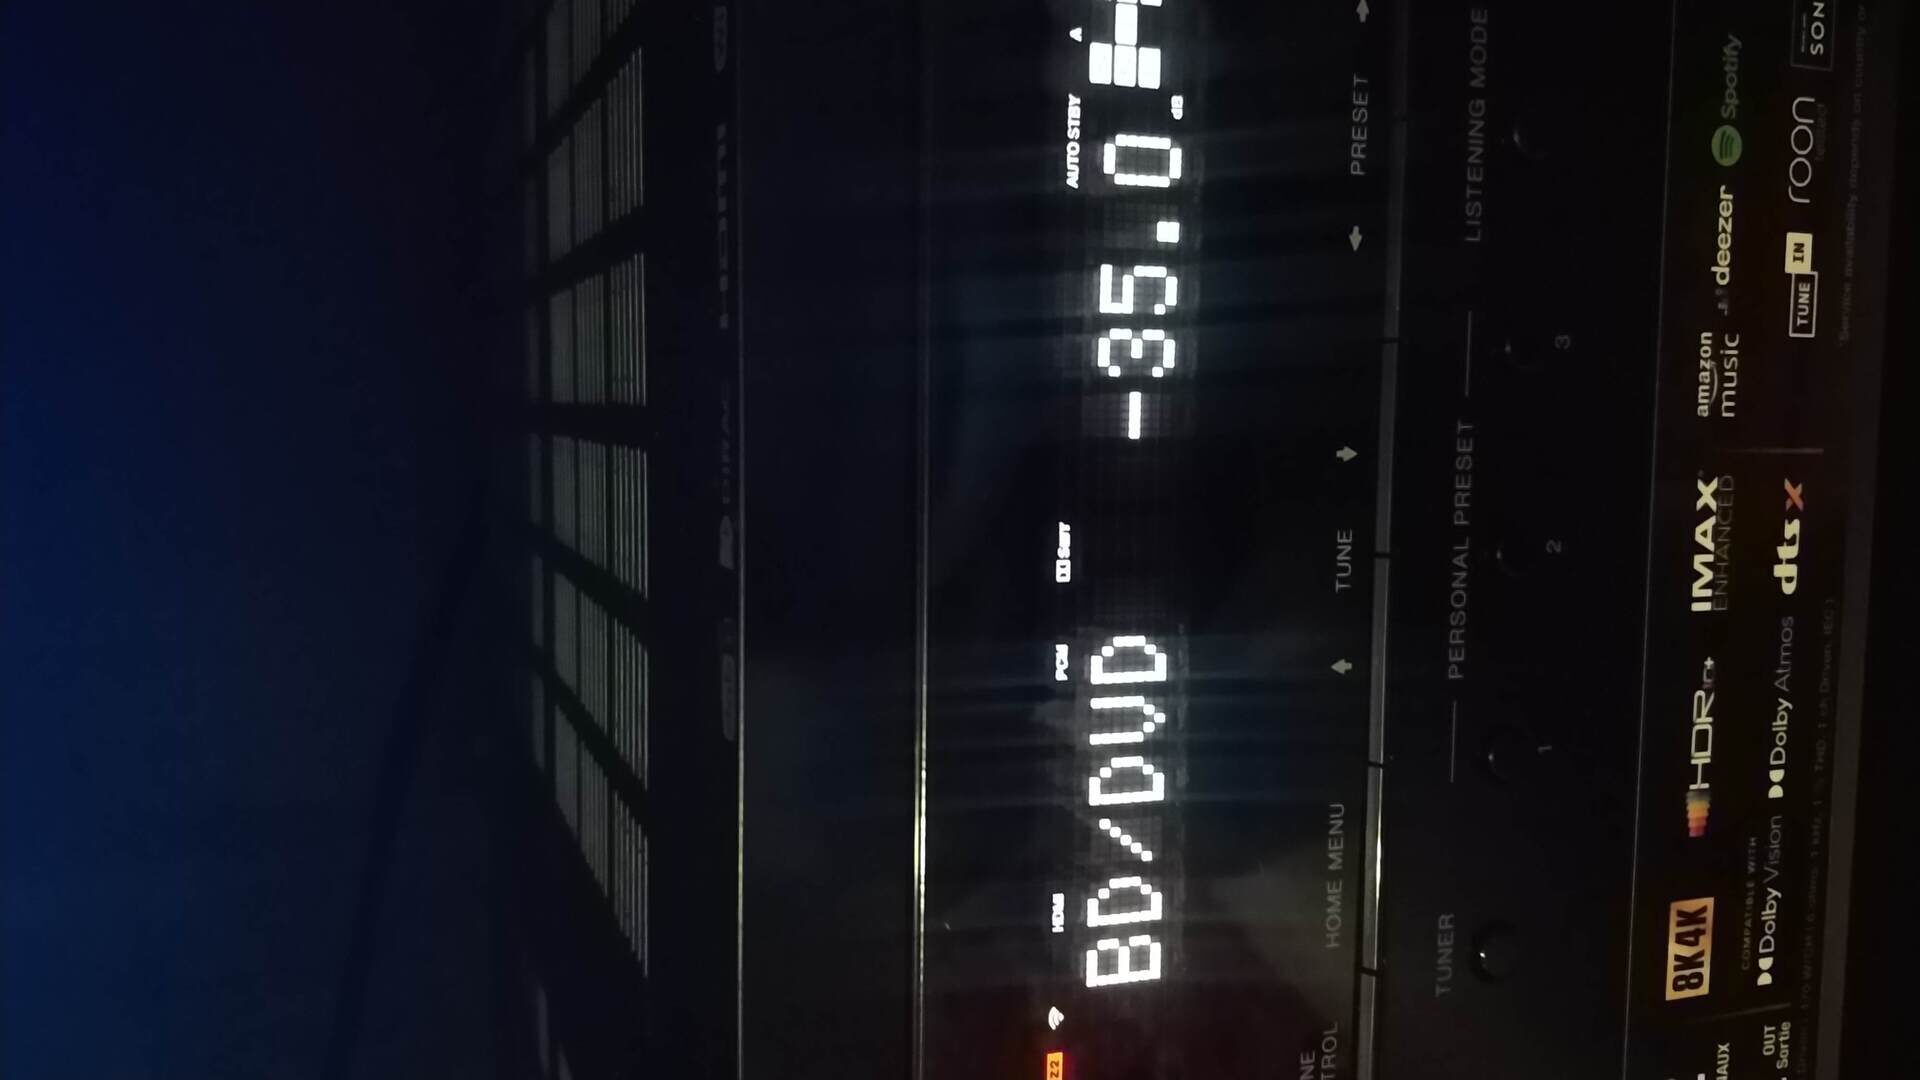 На экране появились наушники. Горит на дисплее лифта надпись Fire.